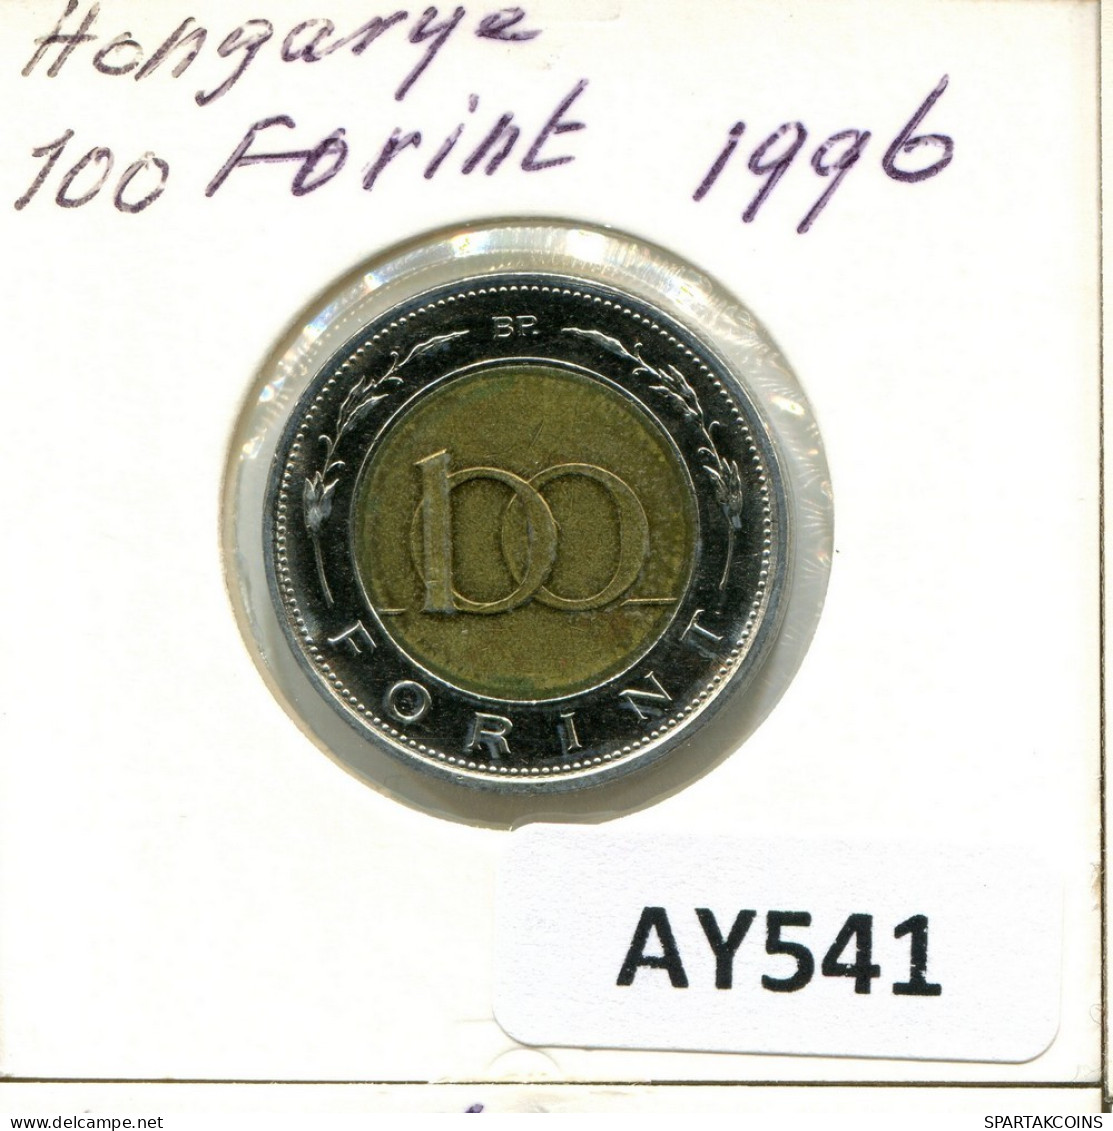 100 FORINT 1996 HUNGRÍA HUNGARY Moneda BIMETALLIC #AY541.E.A - Hungría